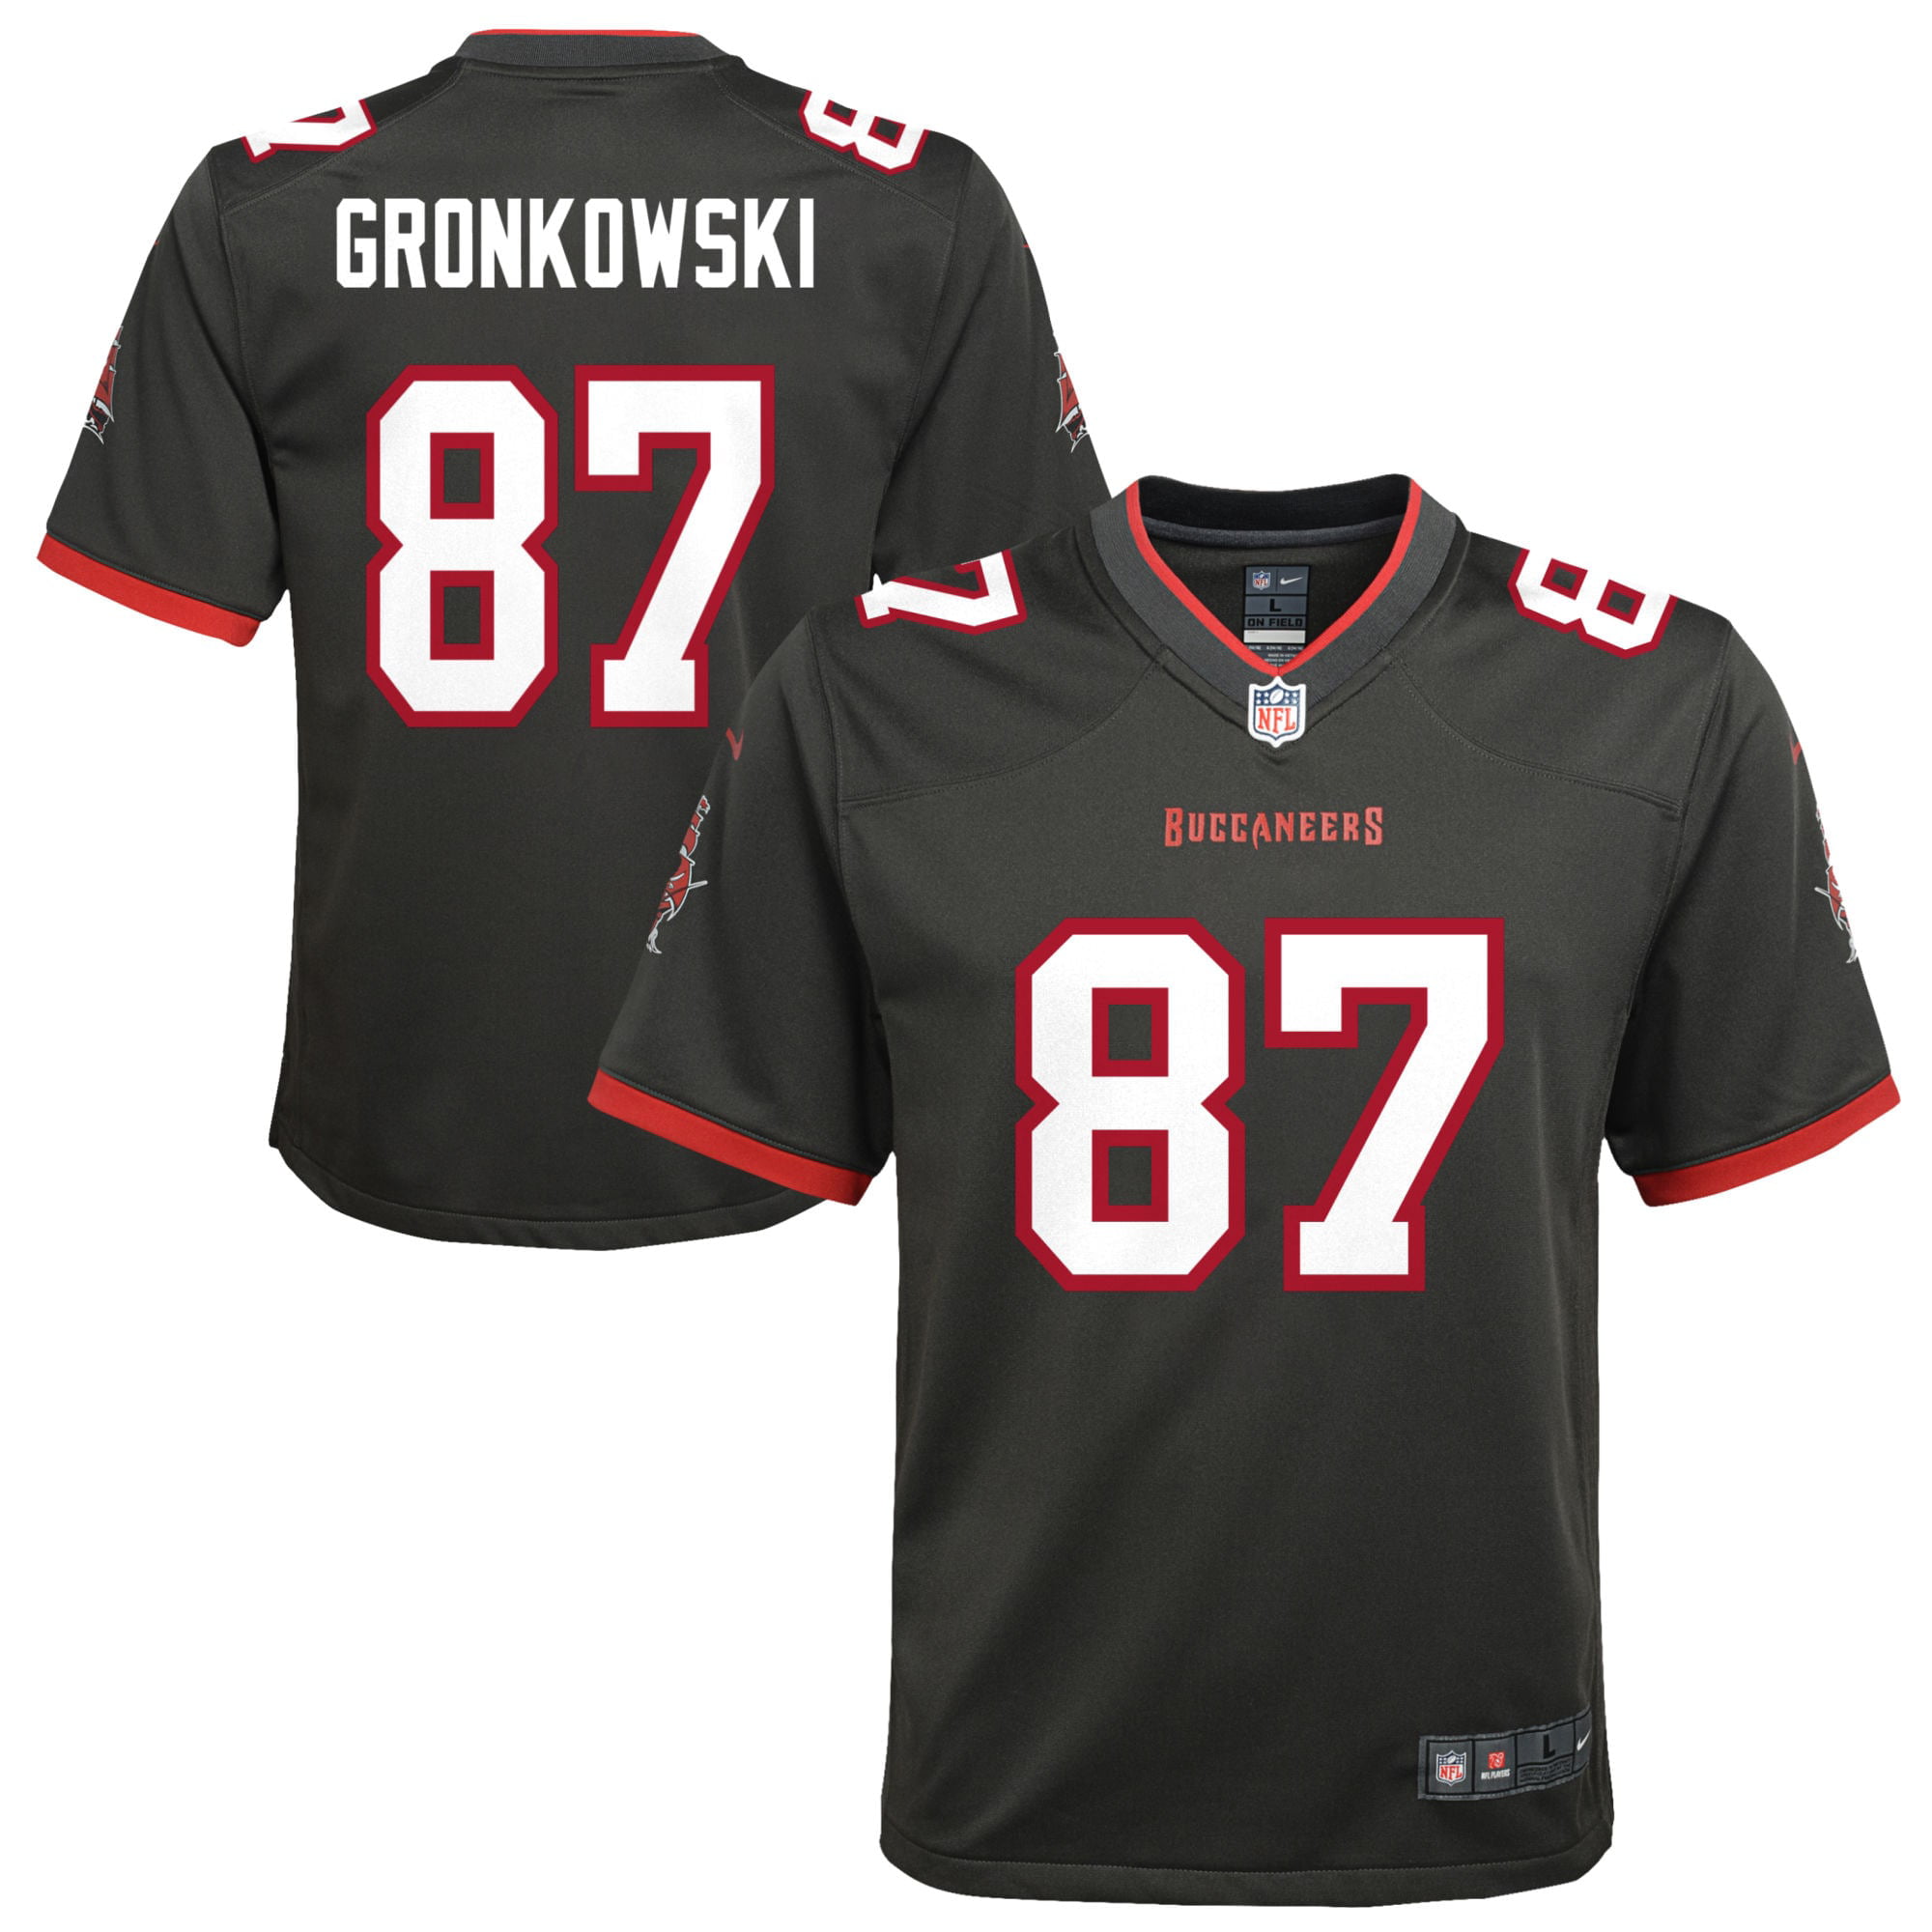 gronkowski jersey medium